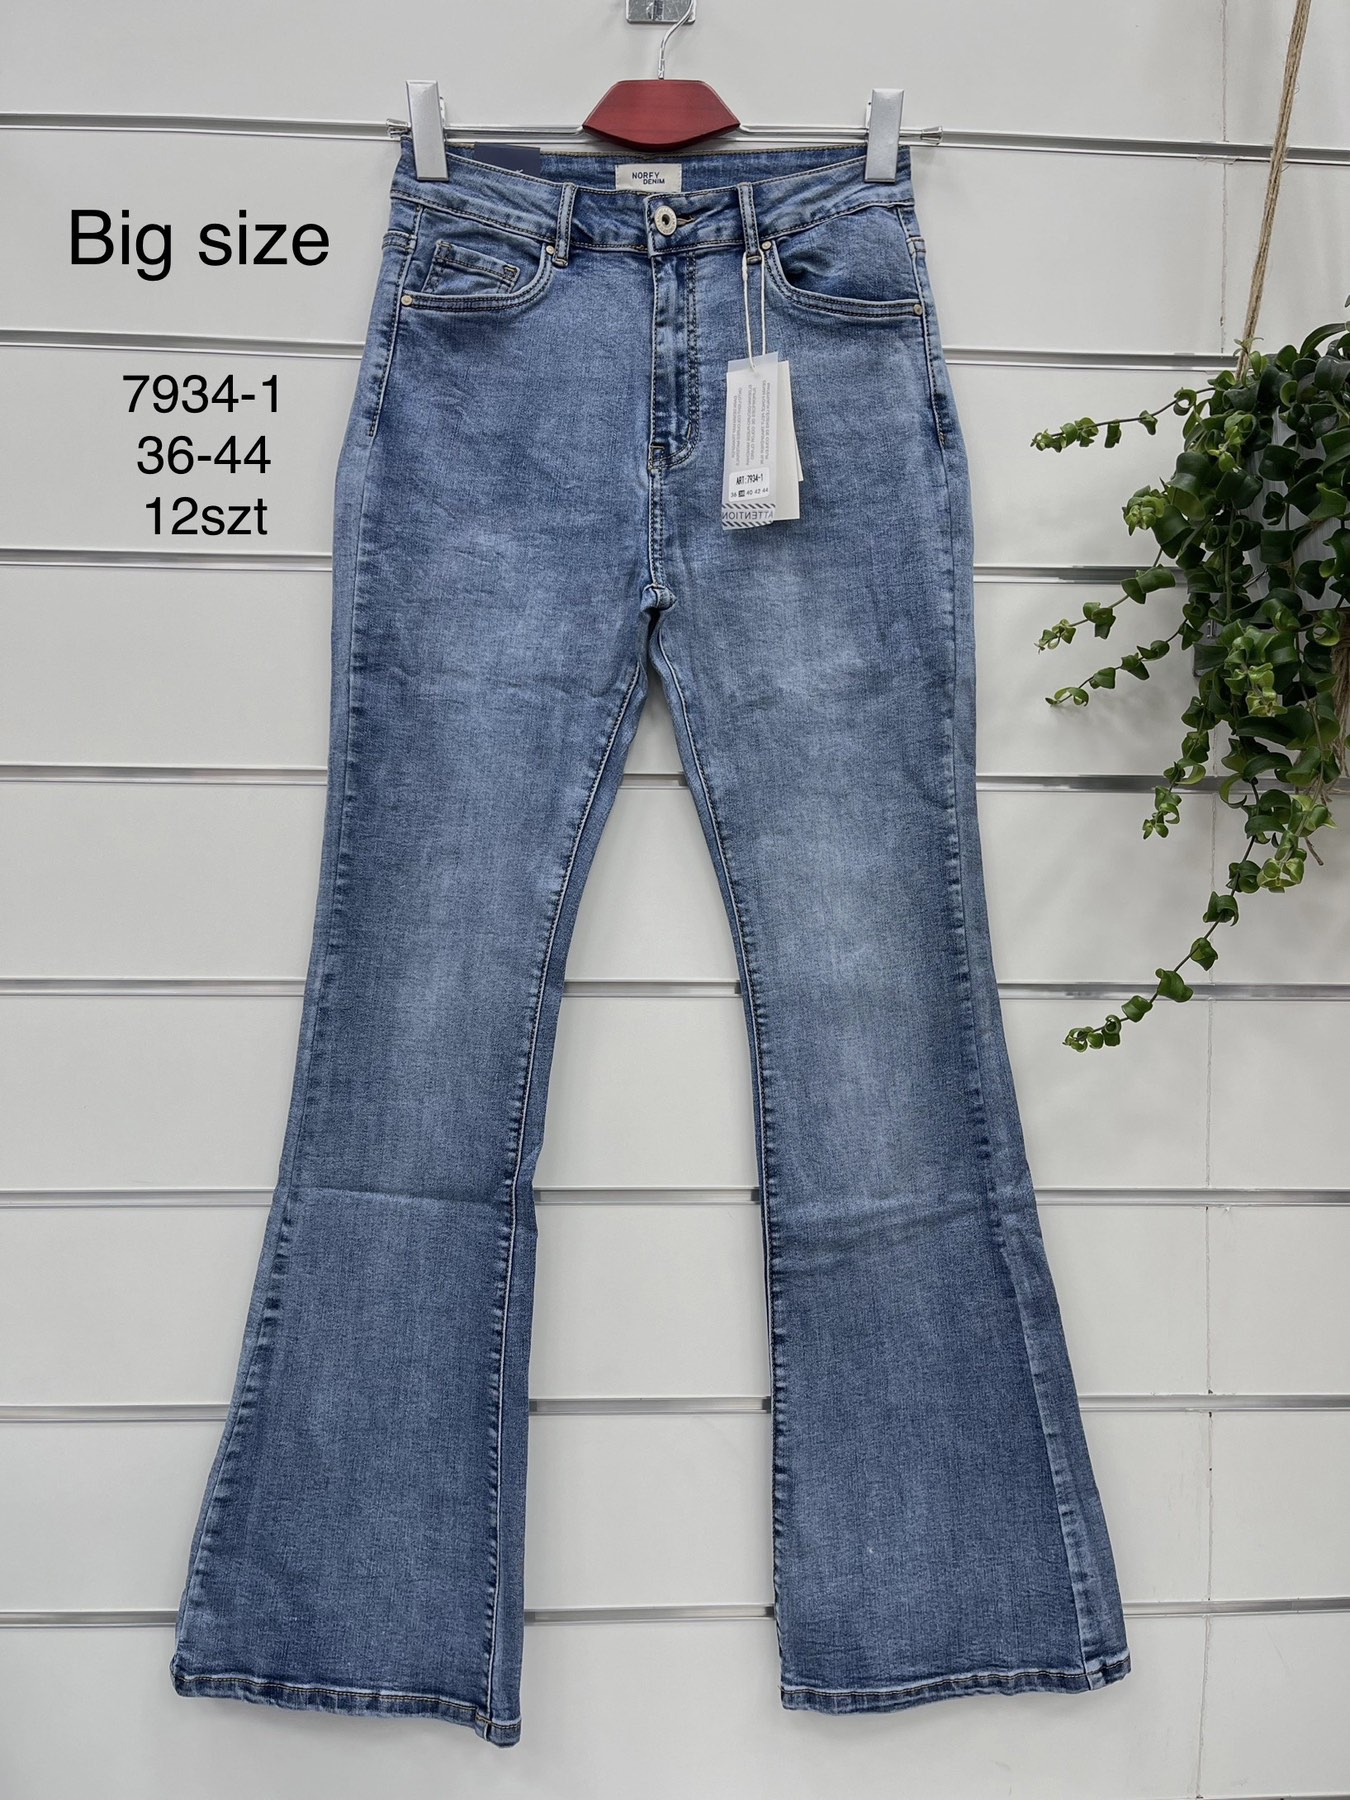 Spodnie damskie jeans Roz  36-44.  1 kolor . Paczka 12szt